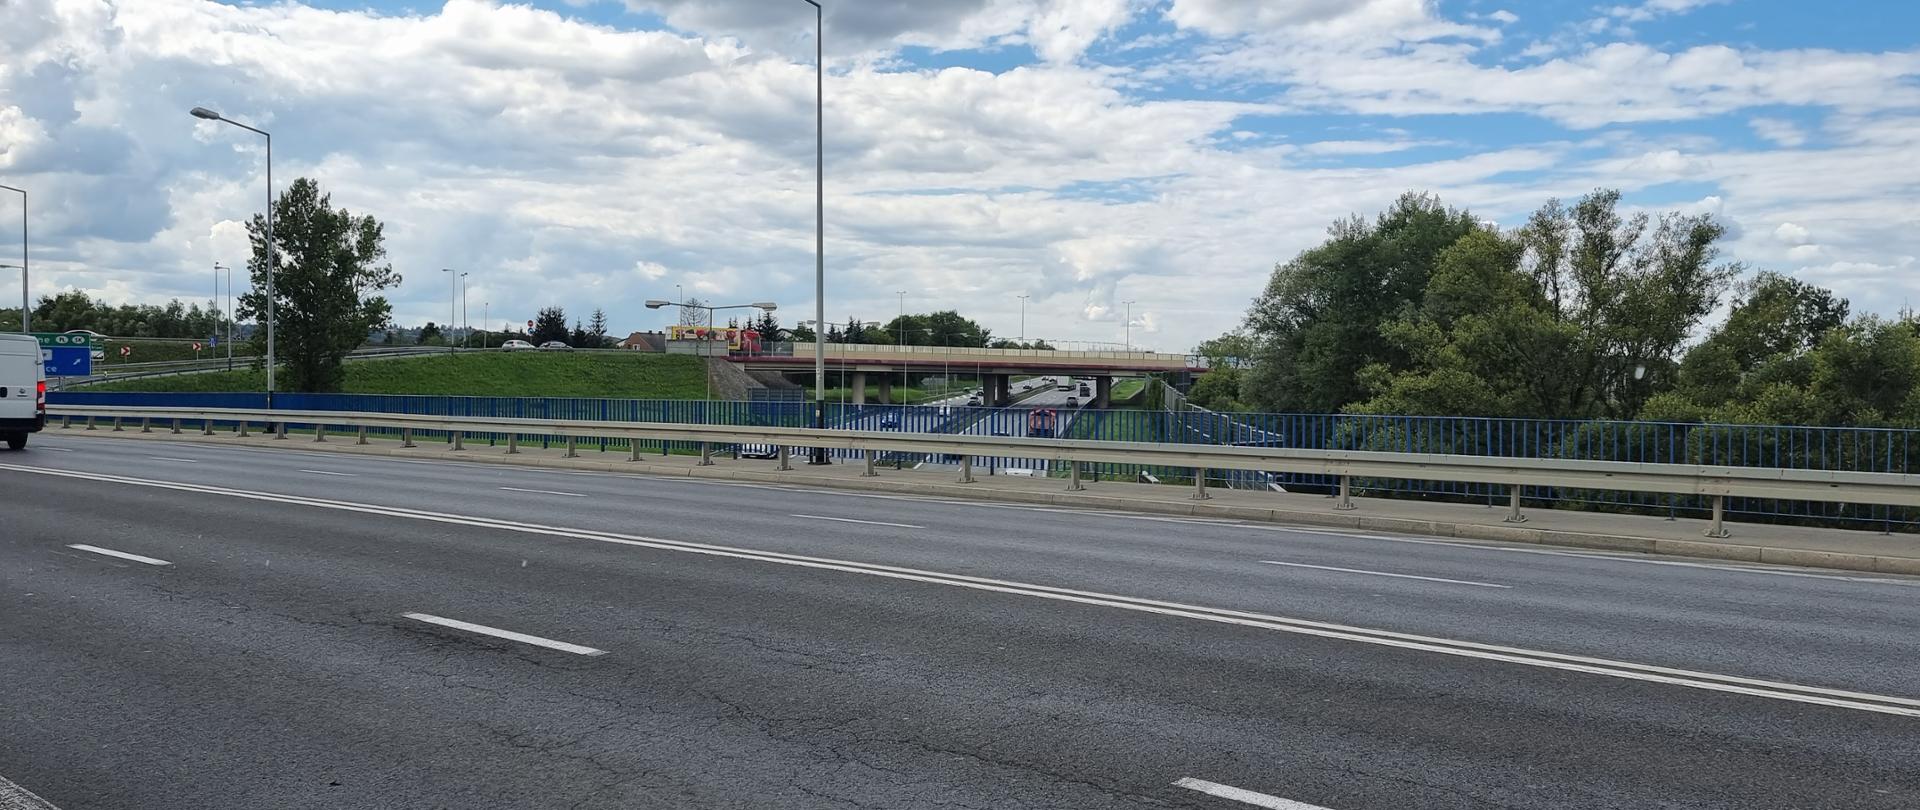 widok z wiaduktu na autostradę A4 Kraków